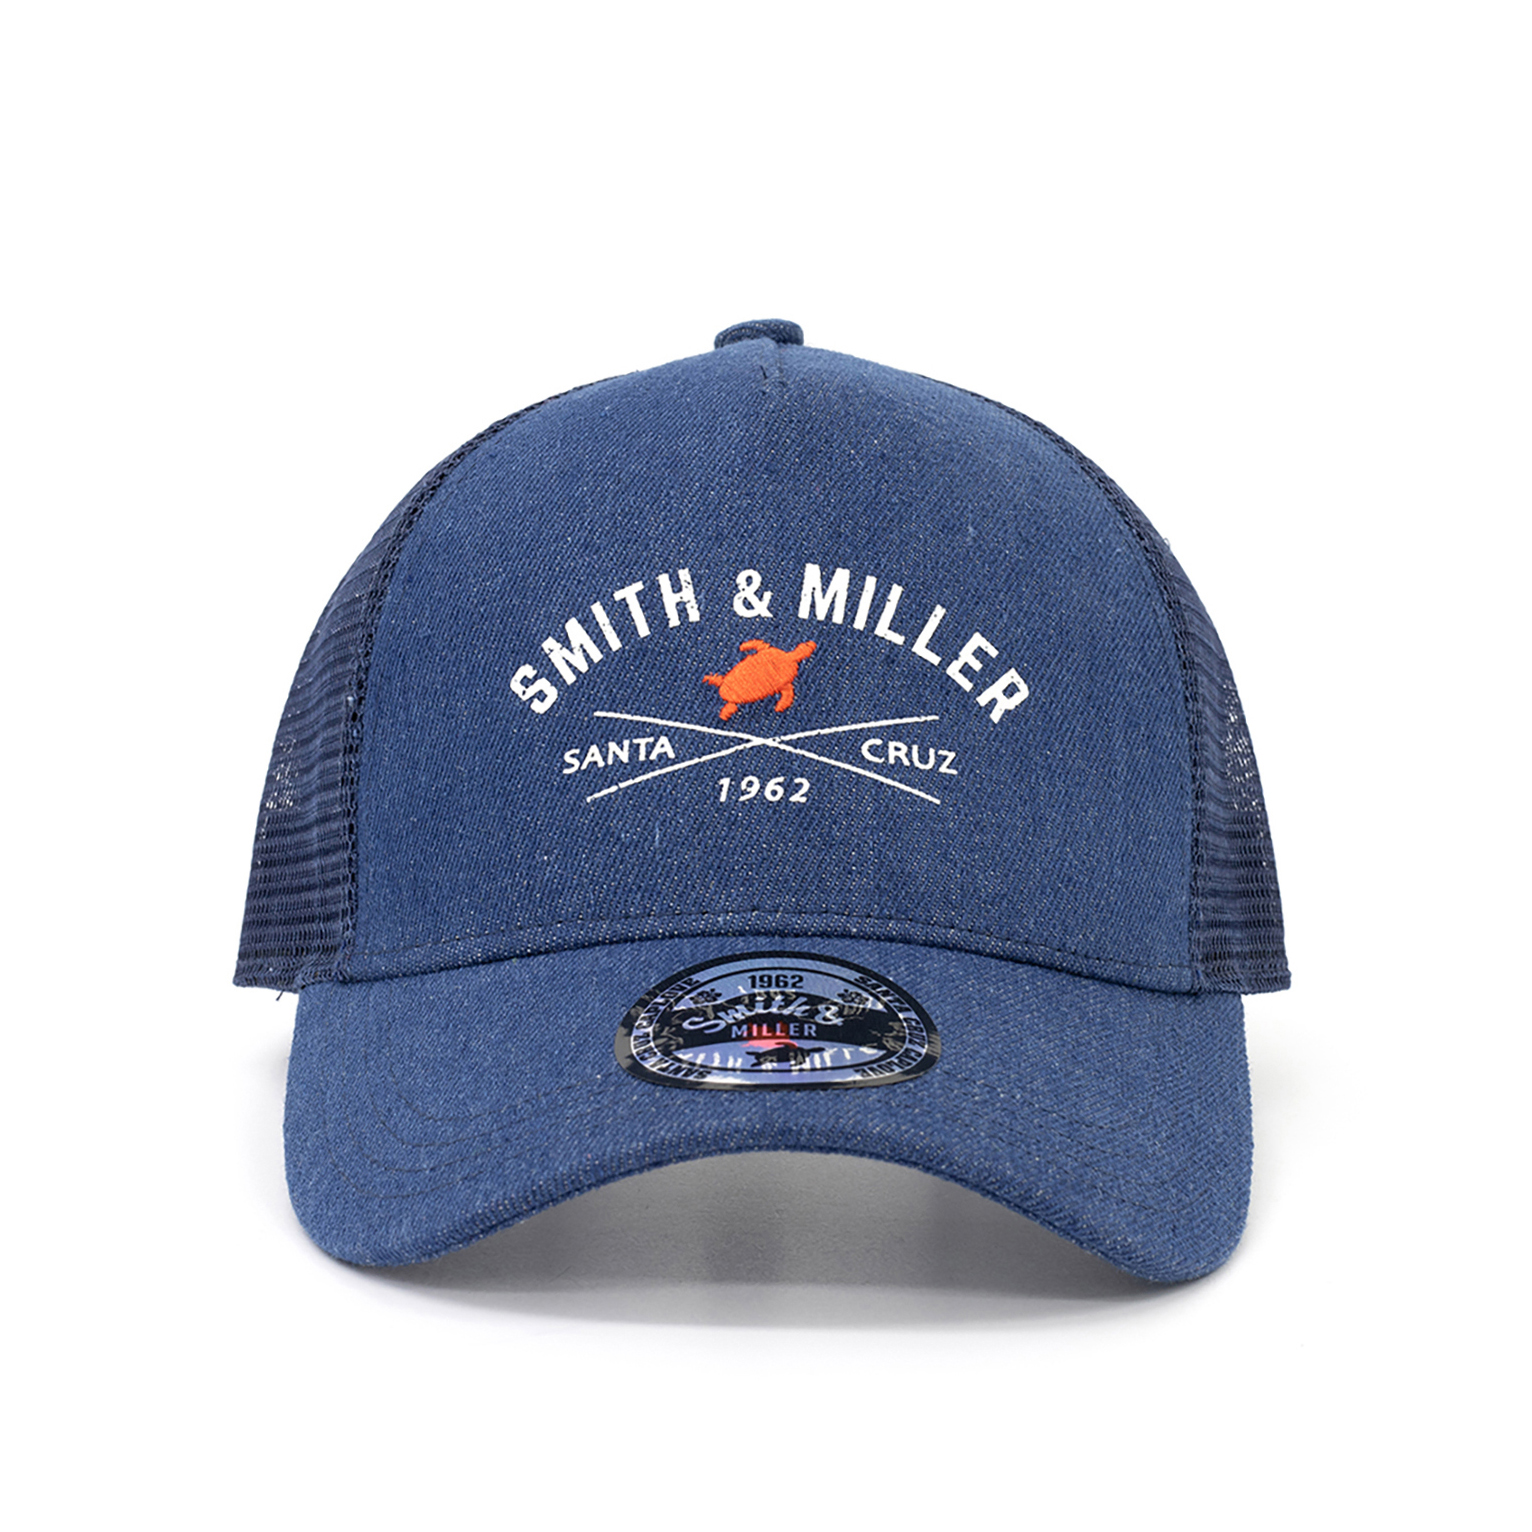 Smith & Miller Dawes Trucker Cap, denim - navy